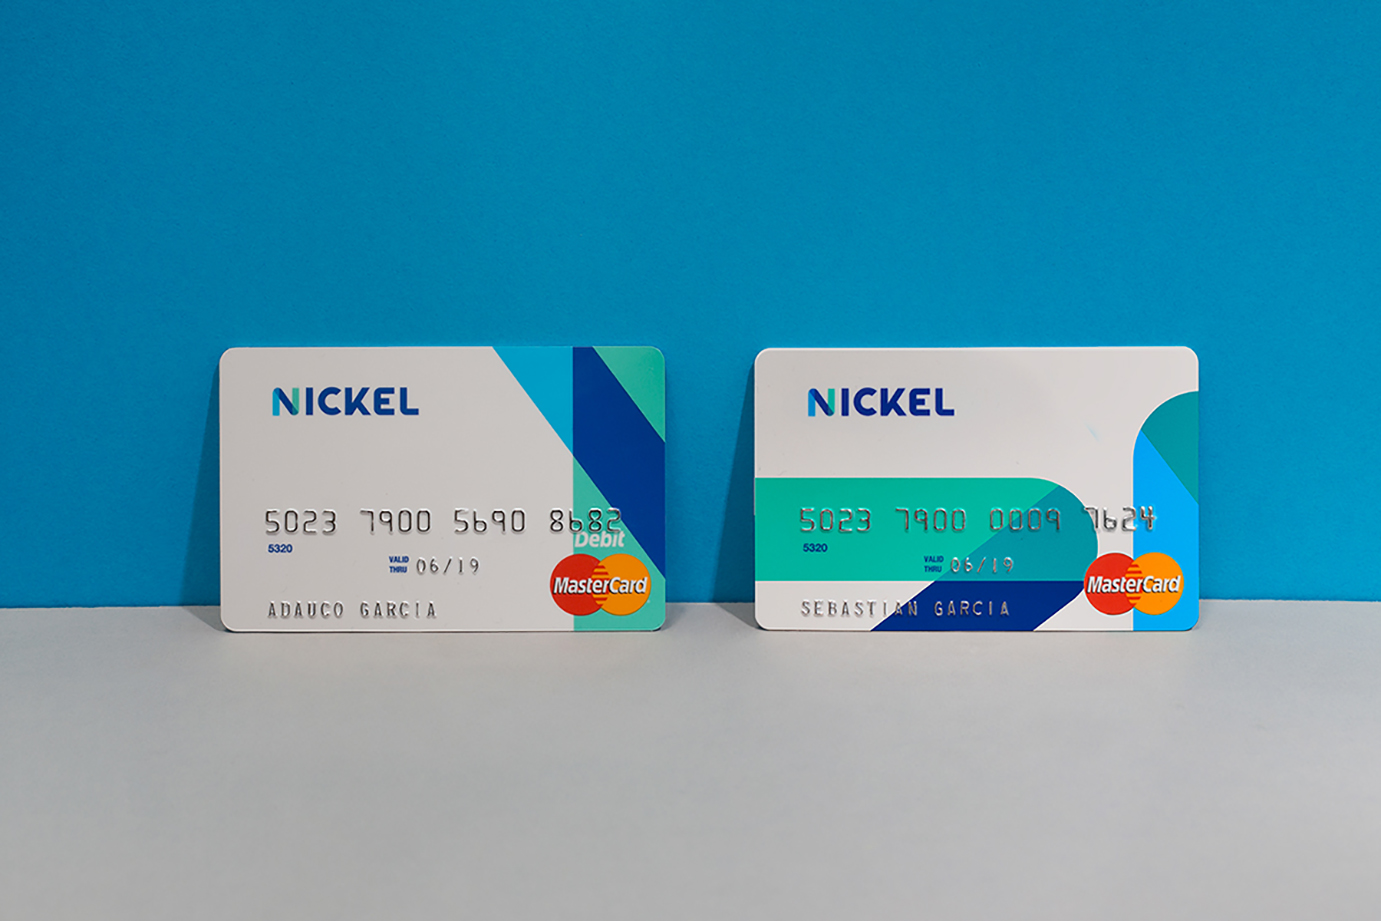 Nickel Labs机构启动全新品牌形象-深圳VI设计公司9